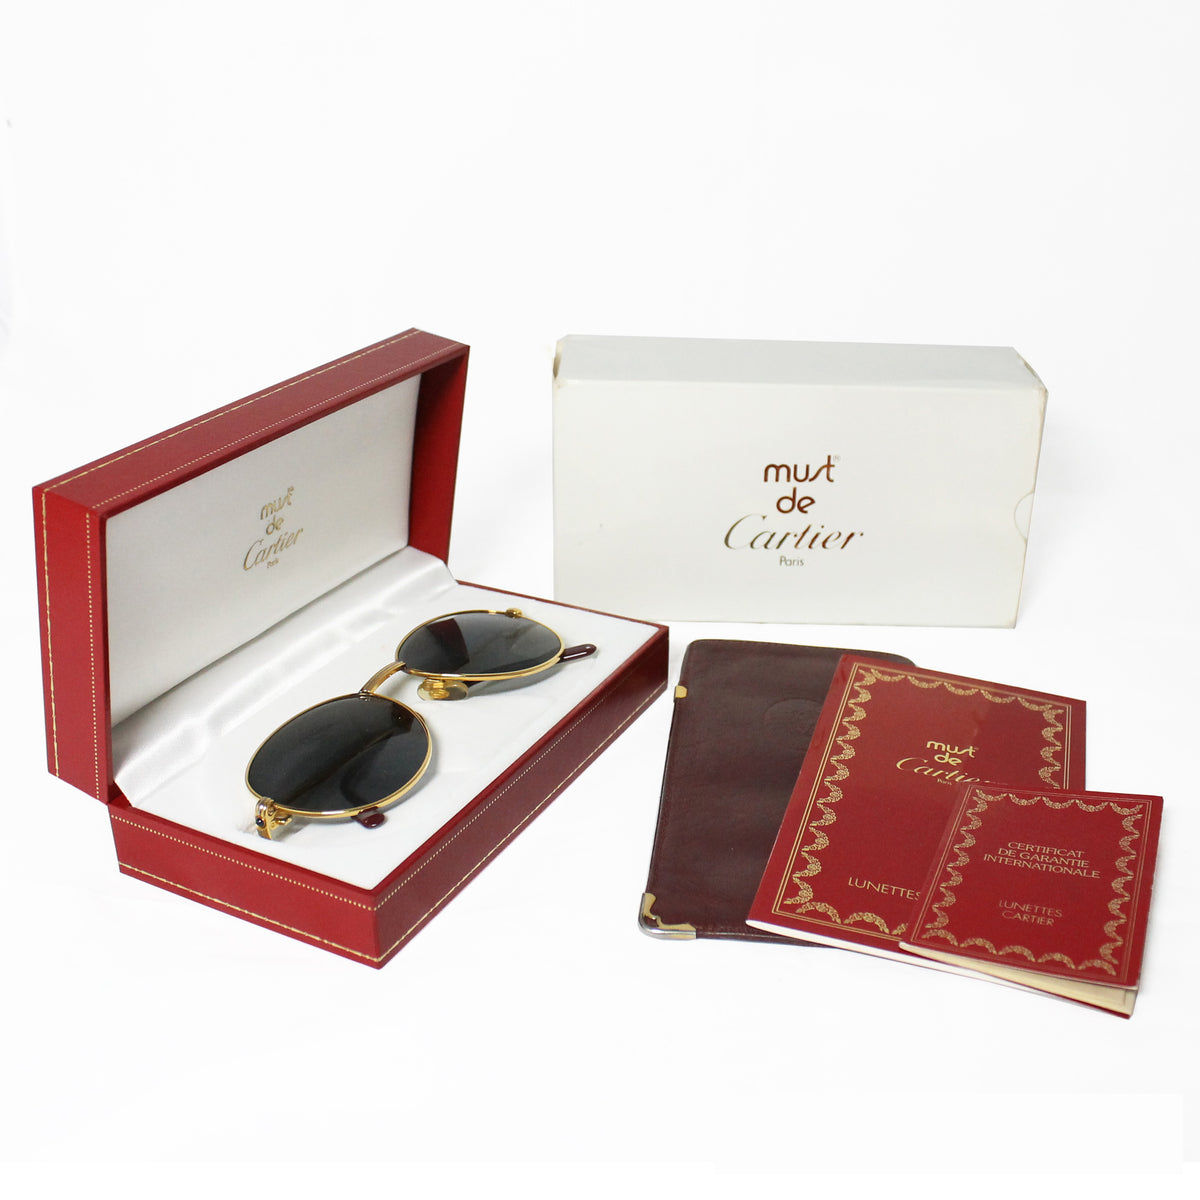 Vintage Louis Cartier Romance Sunglasses